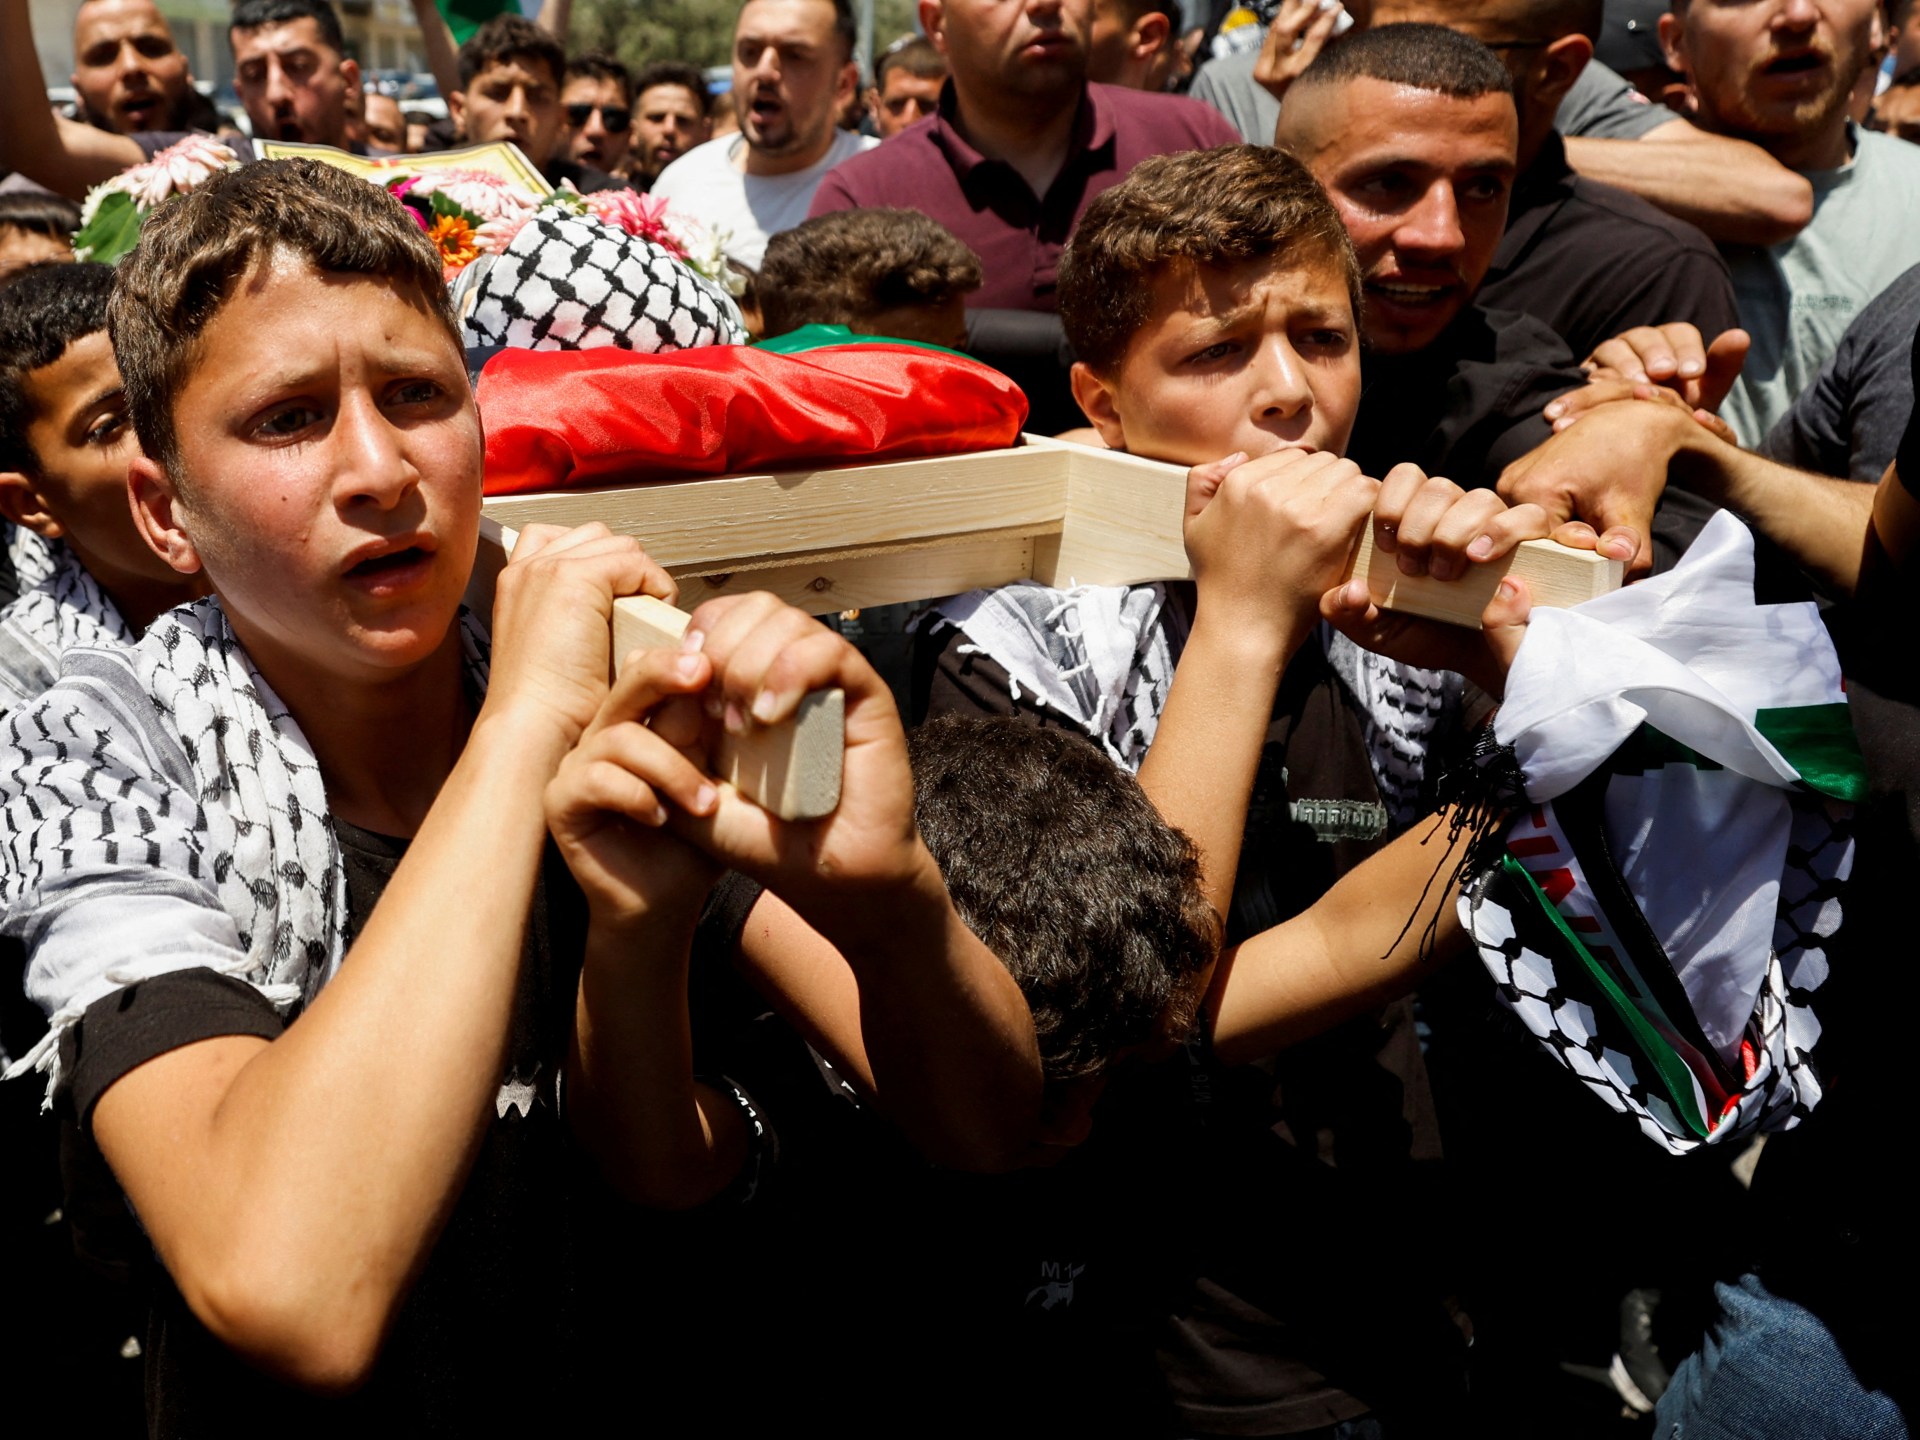 Israel mengatakan balita Palestina ‘secara tidak sengaja’ terbunuh |  Berita Tepi Barat yang Diduduki